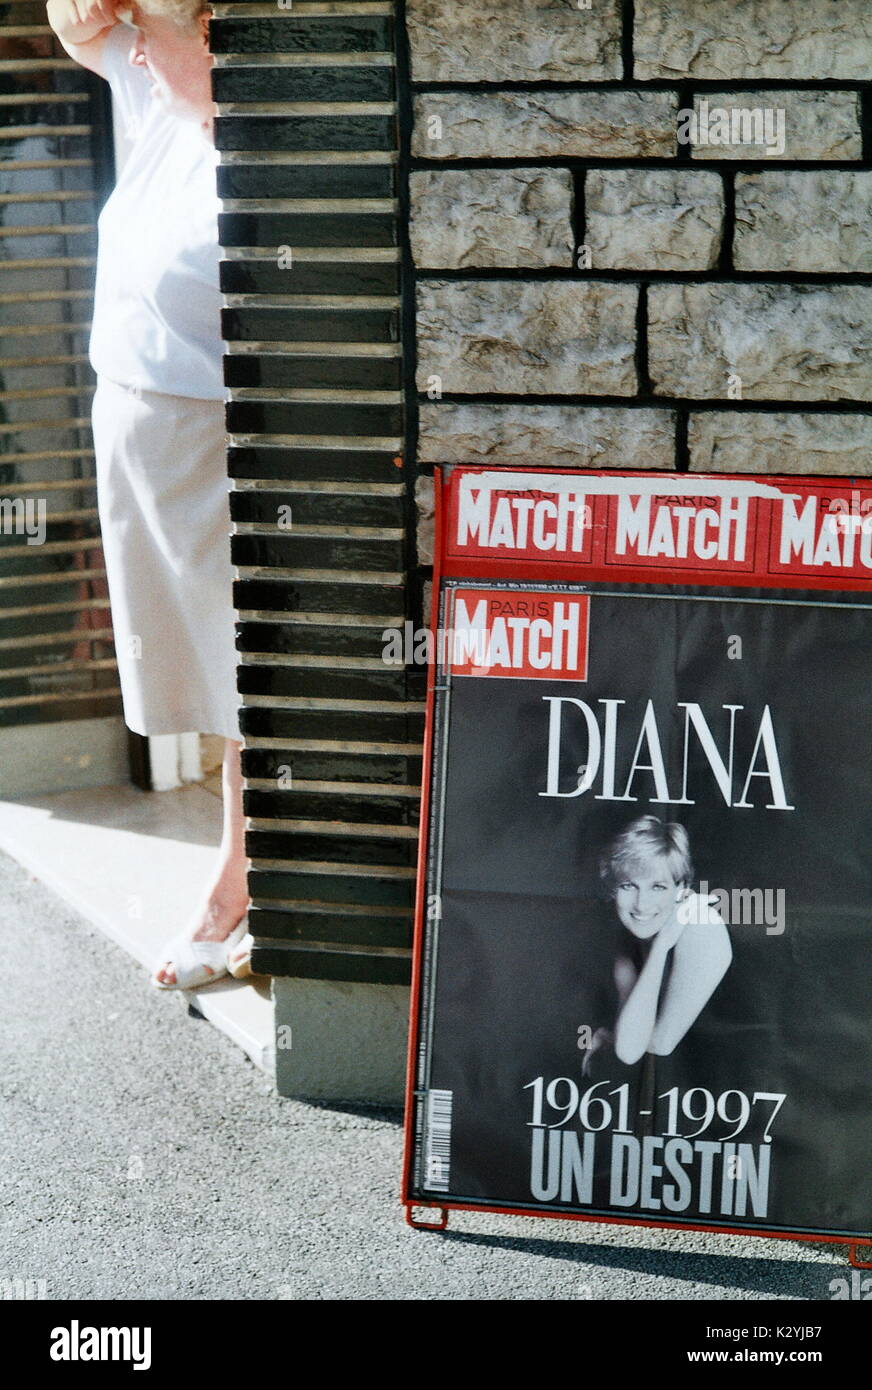 AJAXNETPHOTO. 1997. CASSEL, Francia. - DIANA BILLBOARD - París-MATCH OFICIAL ANUNCIANDO HISTORIA DE S.A.R. la Princesa Diana TRAS SU MUERTE EN UN ACCIDENTE AUTOMOVILÍSTICO EN PARÍS. Foto:JONATHAN EASTLAND/AJAX REF:12 29a Foto de stock